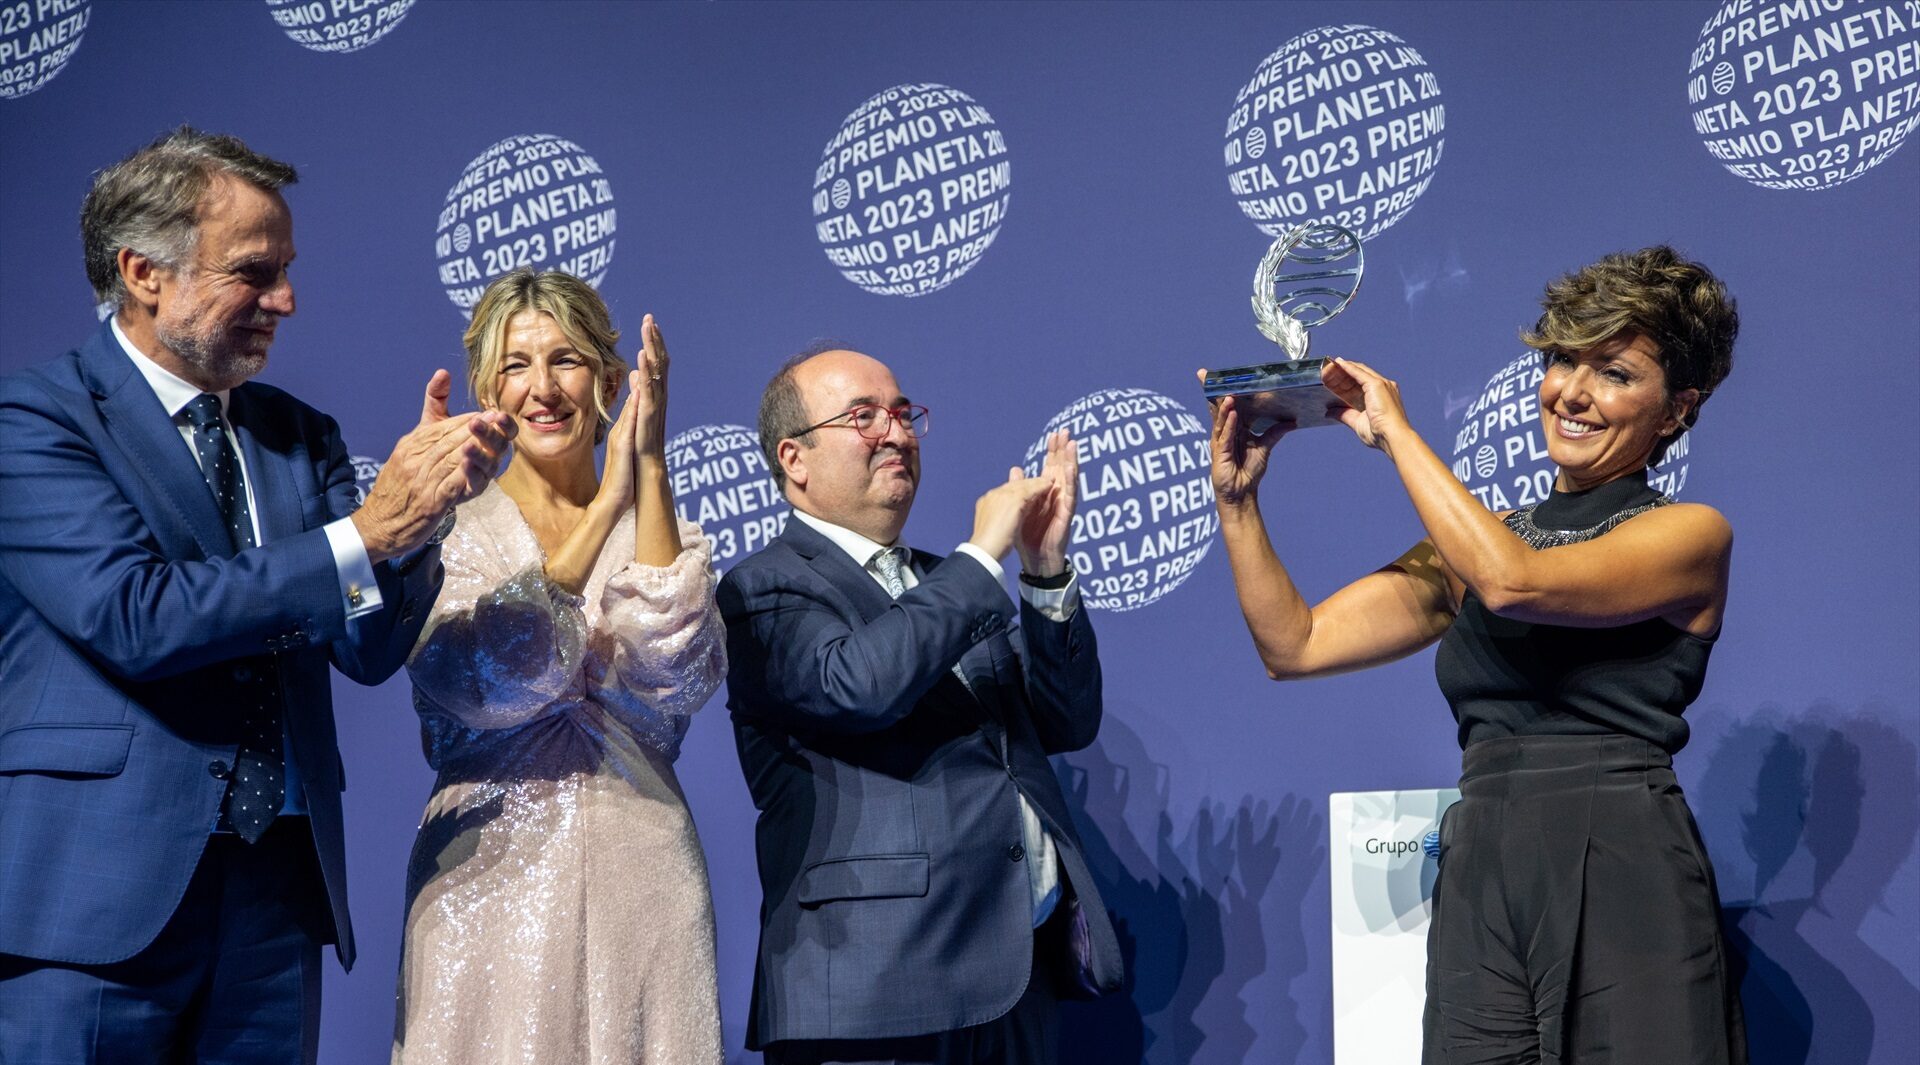 La Razón y el ABC defienden a Yolanda Díaz por asistir a la gala del premio Planeta